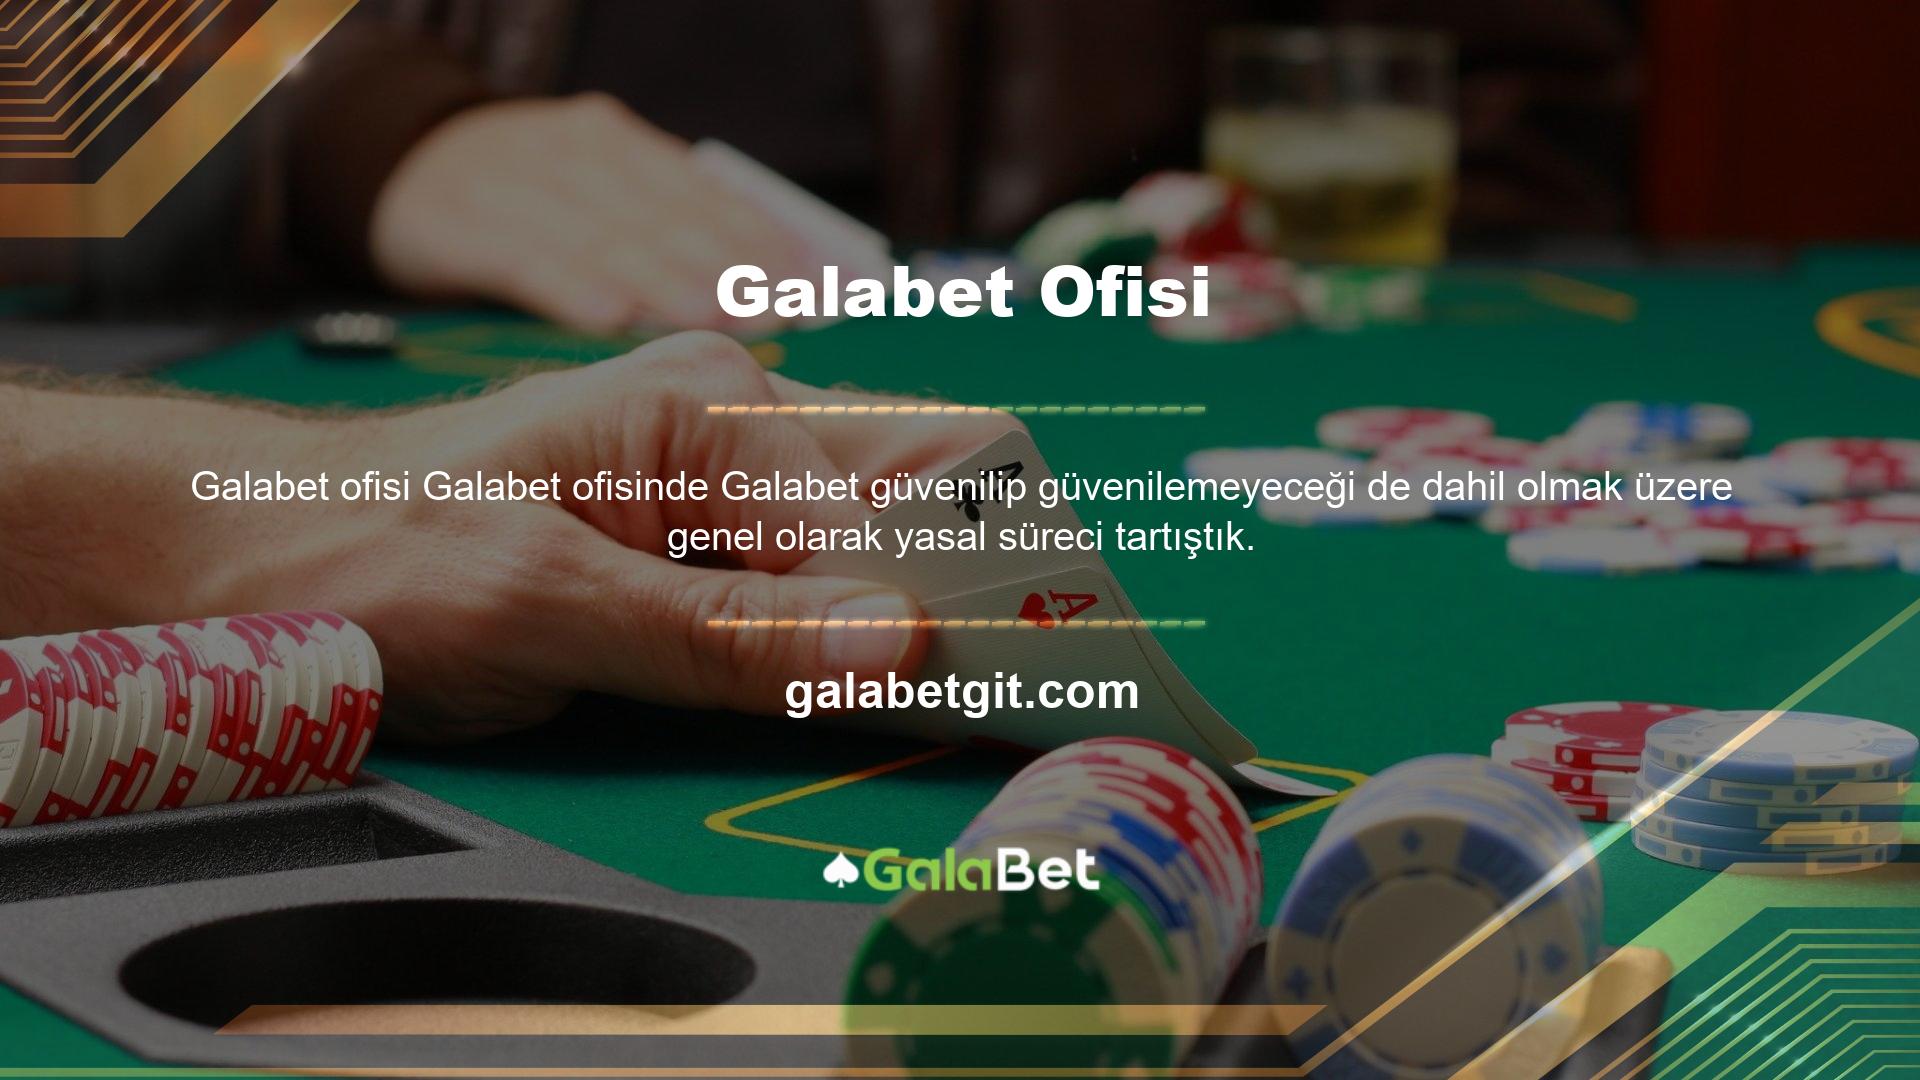 Öncelikle Galabet Live web sitesinden şirket bilgilerini kontrol edin